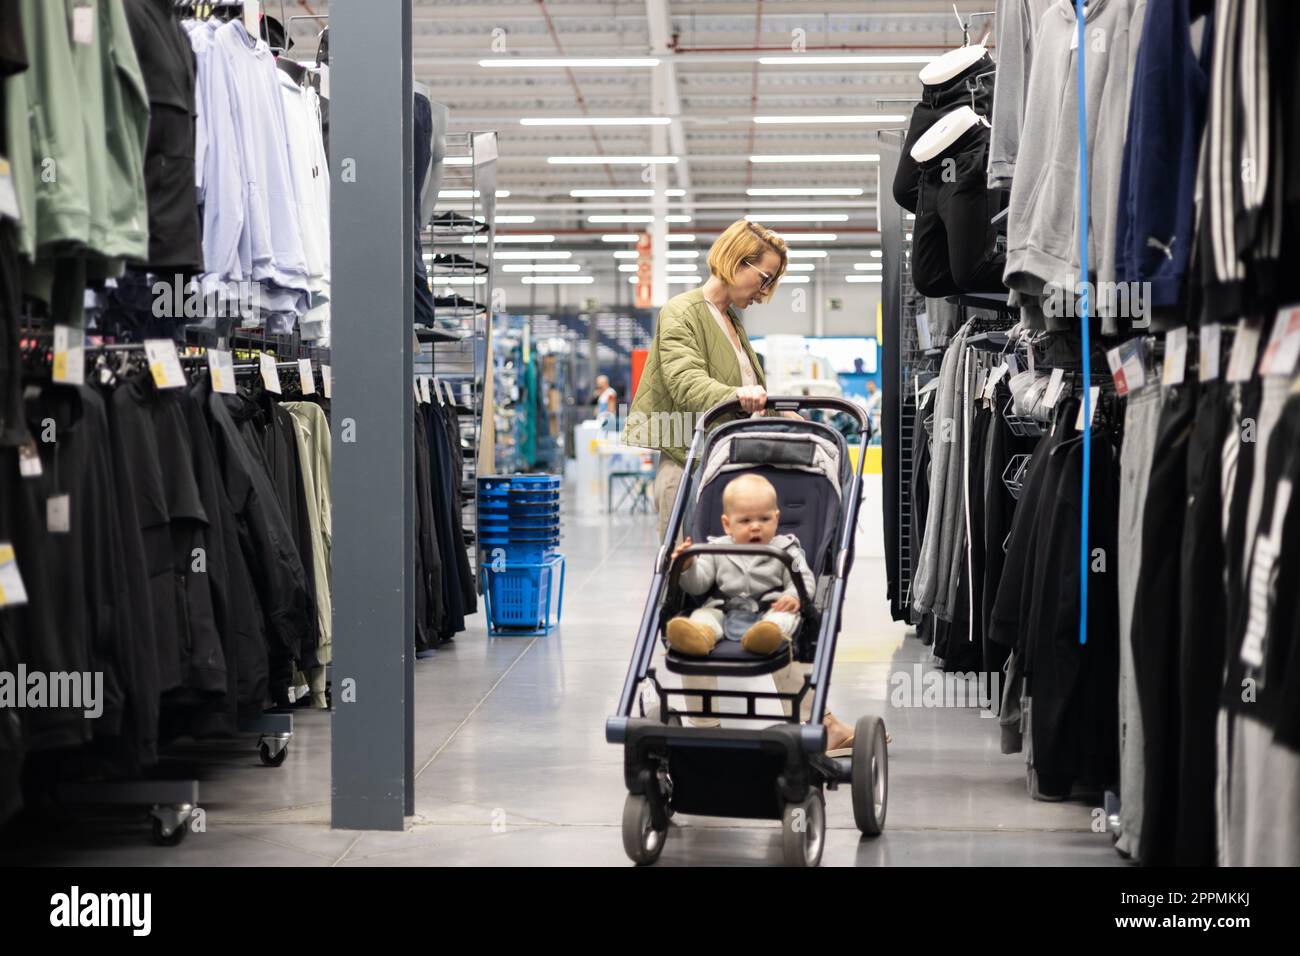 Lässig gekleidete Mutter, die in der Sportabteilung des Supermarkts  Sportschuhe und Bekleidungsartikel aussucht, mit ihrem kleinen Jungen im  Kinderwagen Stockfotografie - Alamy